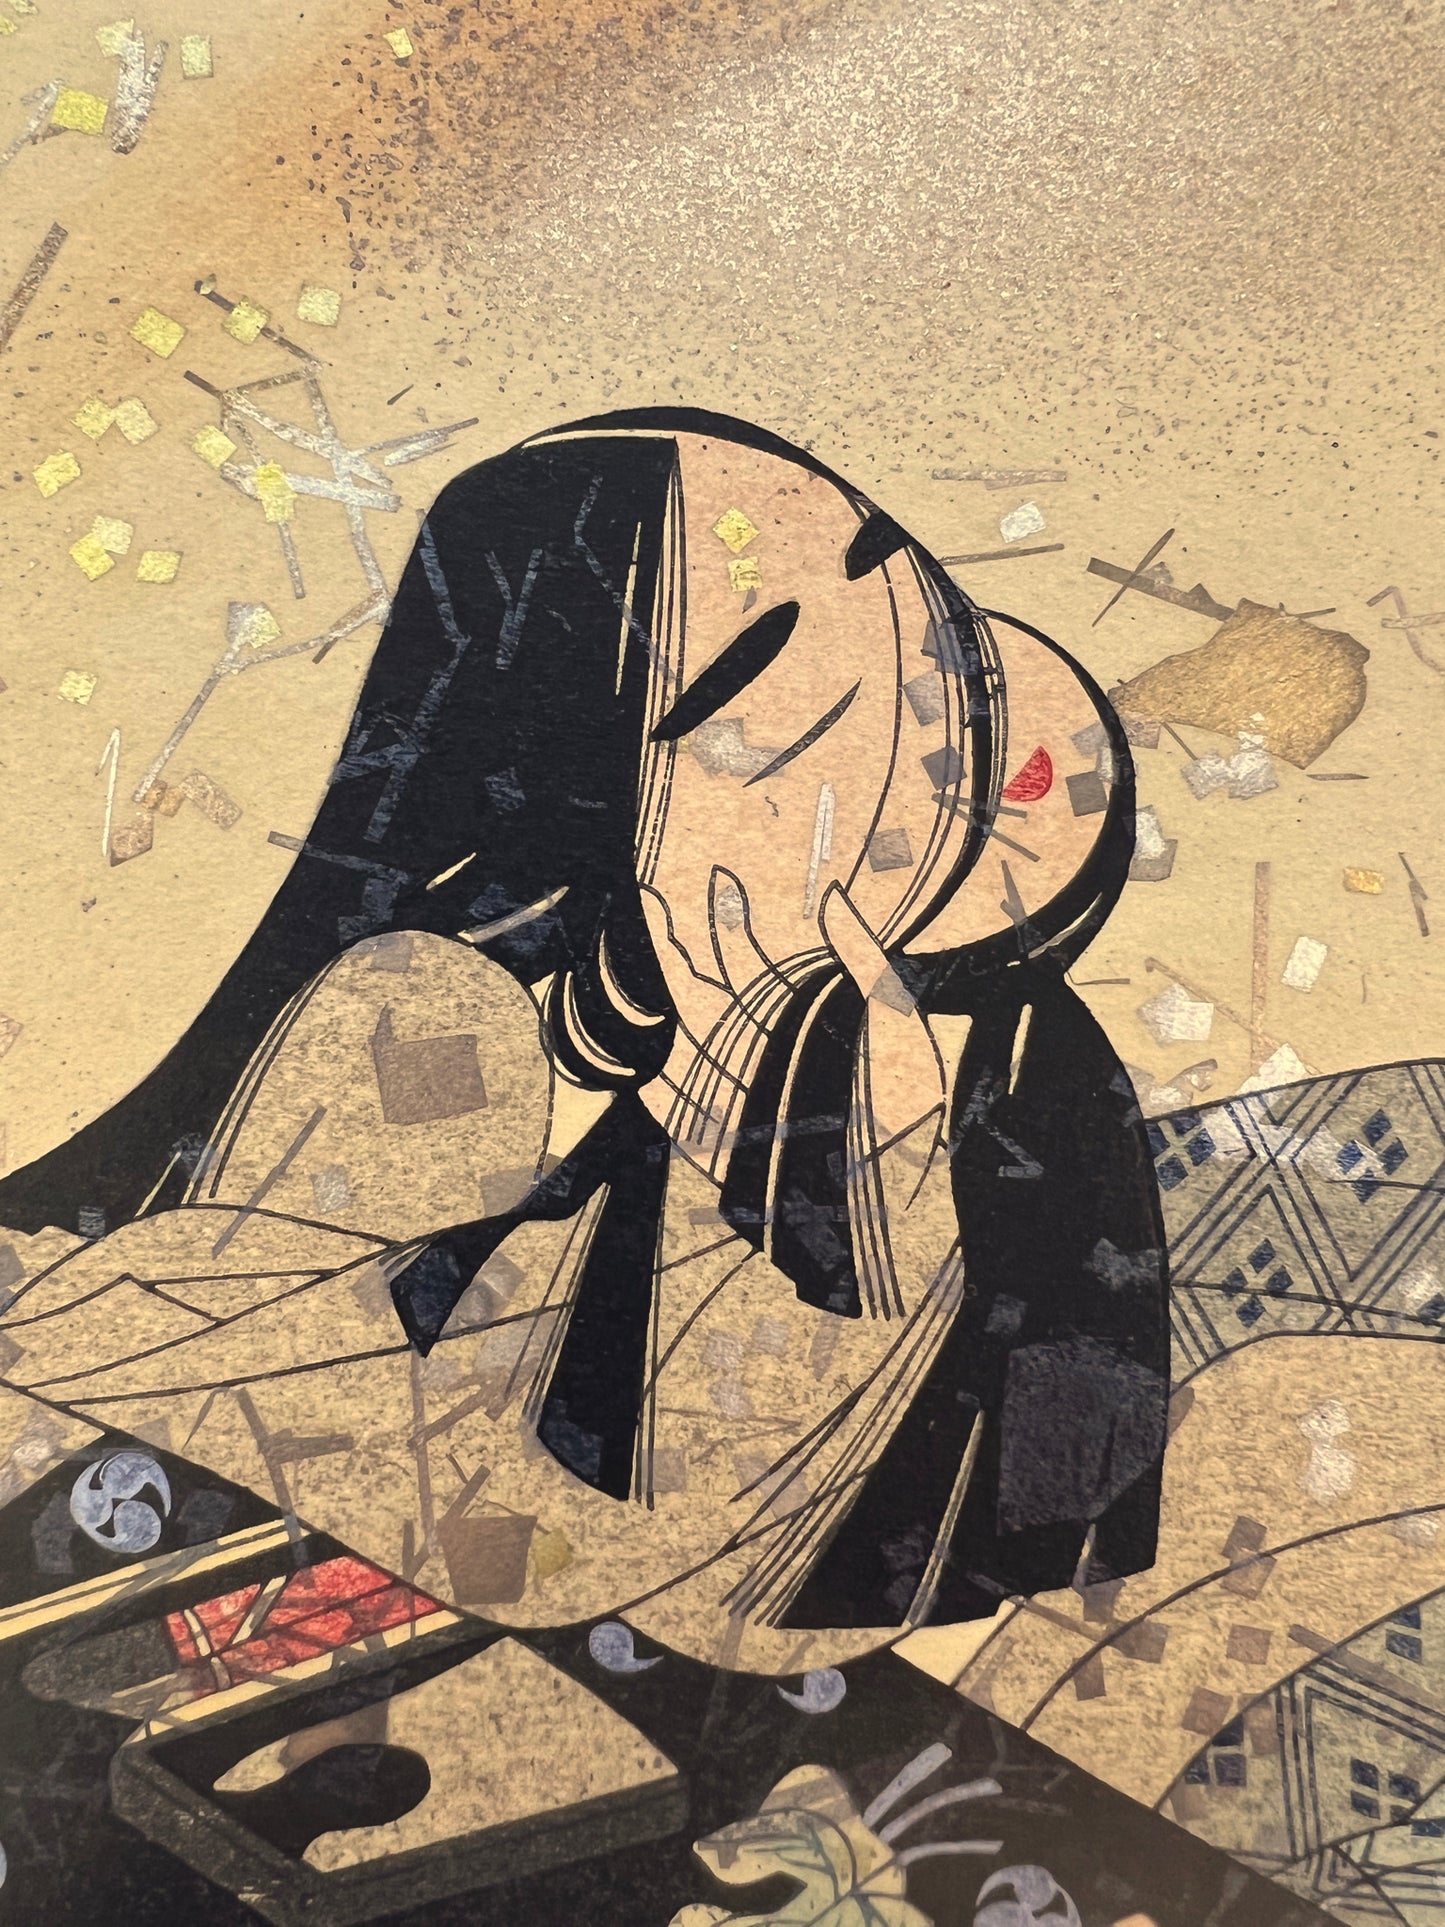 estampe japonaise en forme d'éventail parsemé de fragment d'or et d'argent, un homme lit un poème à une femme agenouillée, gros plan sur le visage souriant de la femme